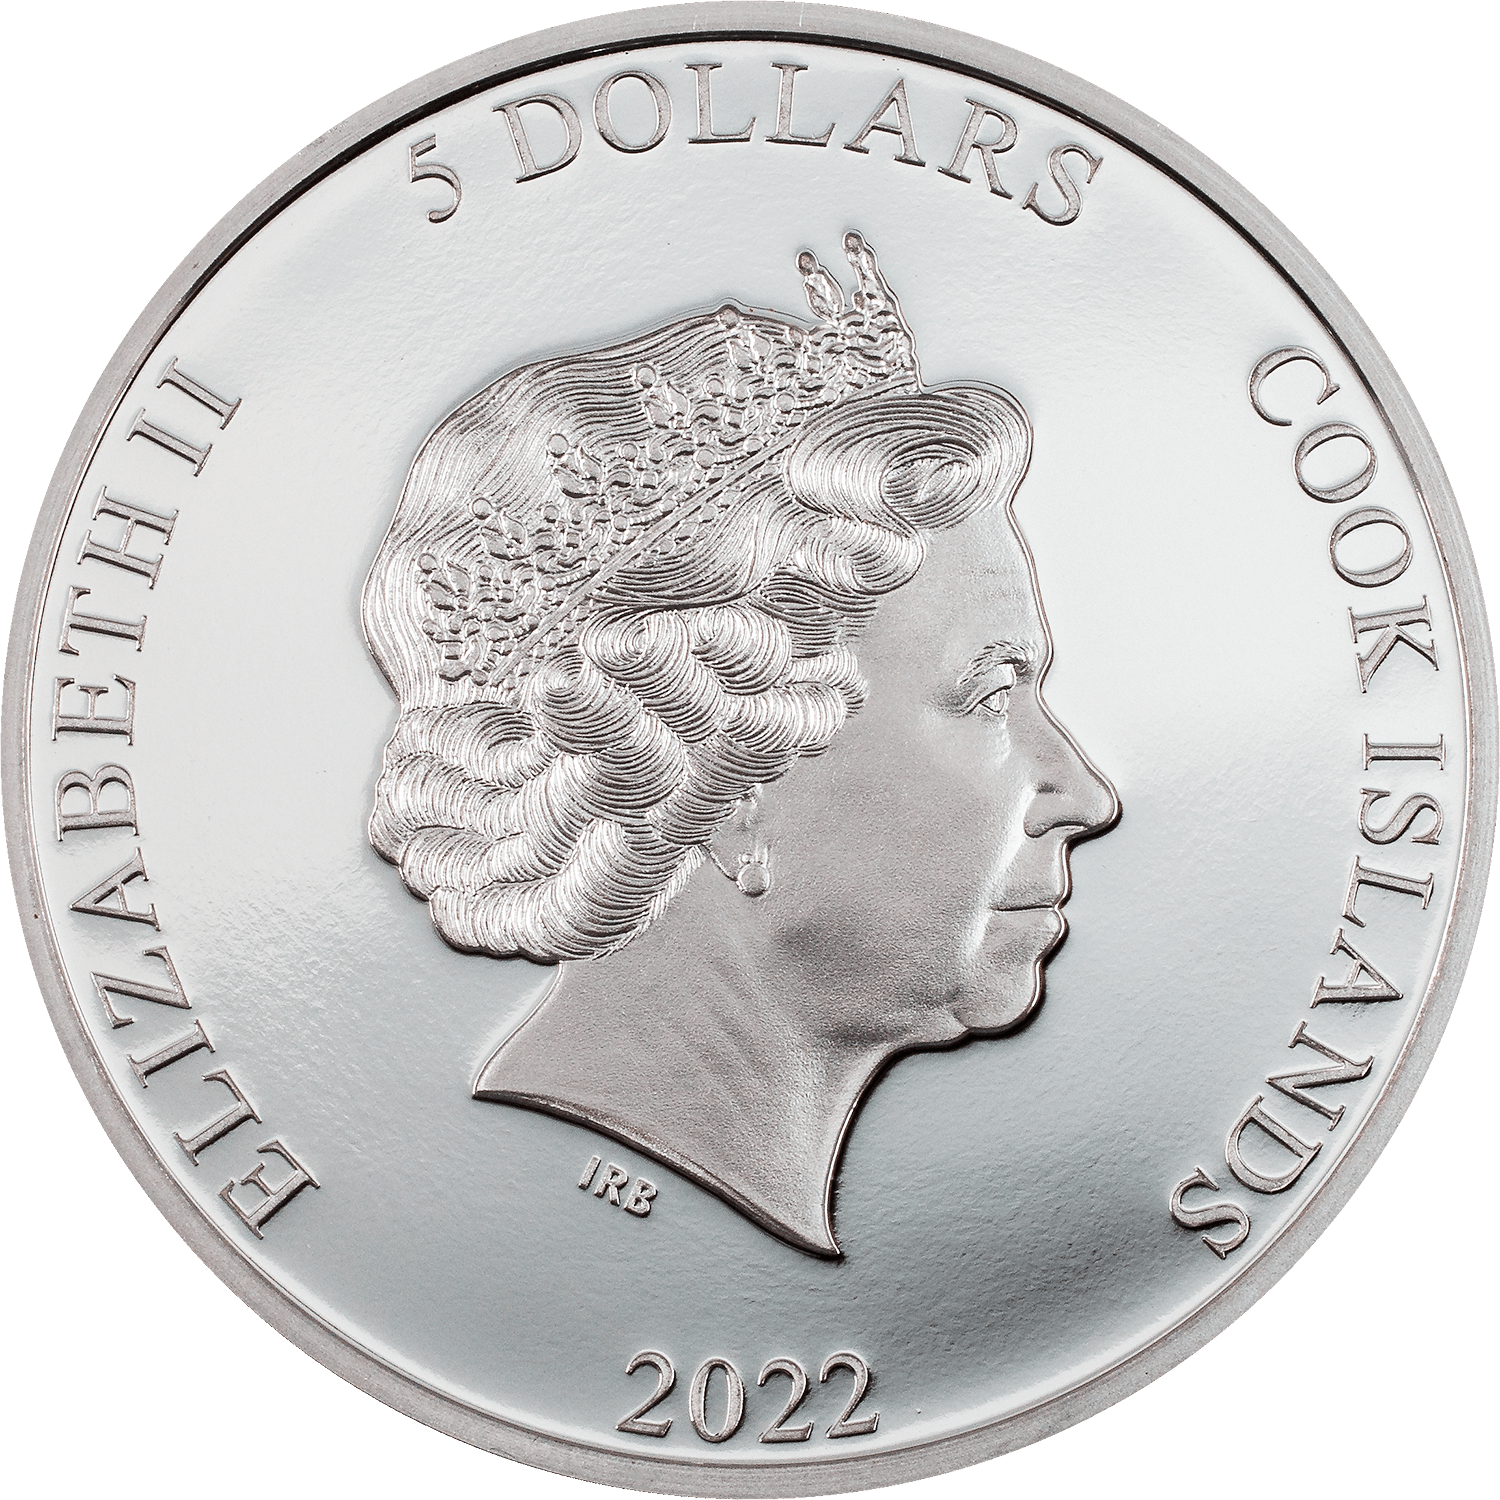 ROLLER Eclectic Nature Bird 1 Oz Silver Coin $5 Cook Islands 2022 - PARTHAVA COIN